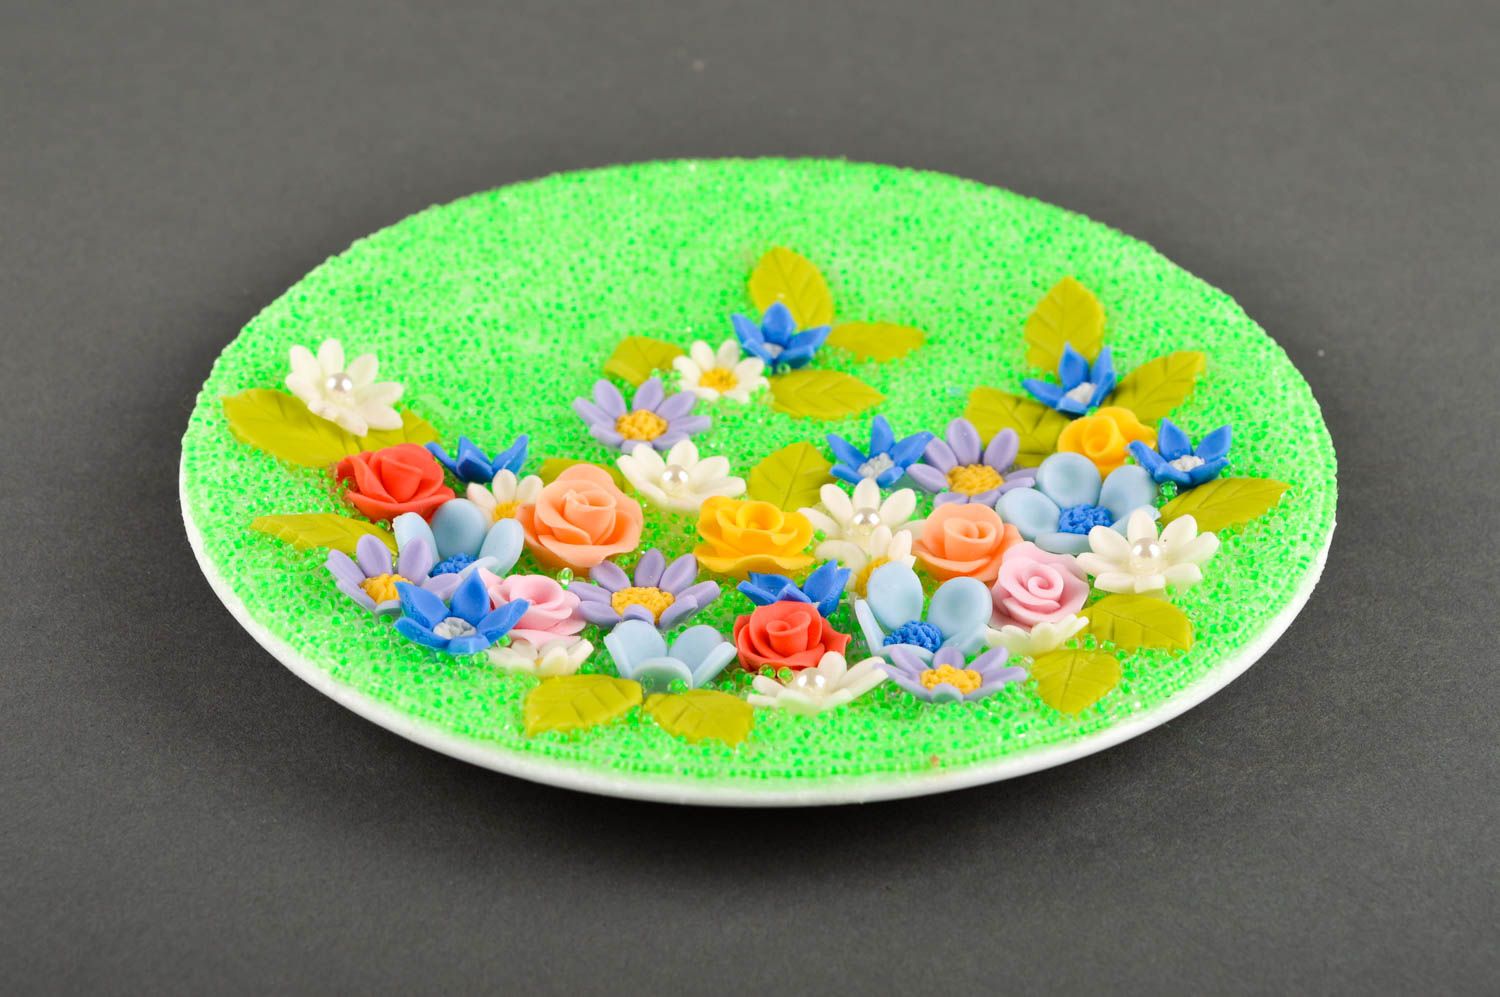 Свадебная тарелка хэнд мэйд посуда на свадьбу красивая посуда цветочная тарелка фото 4